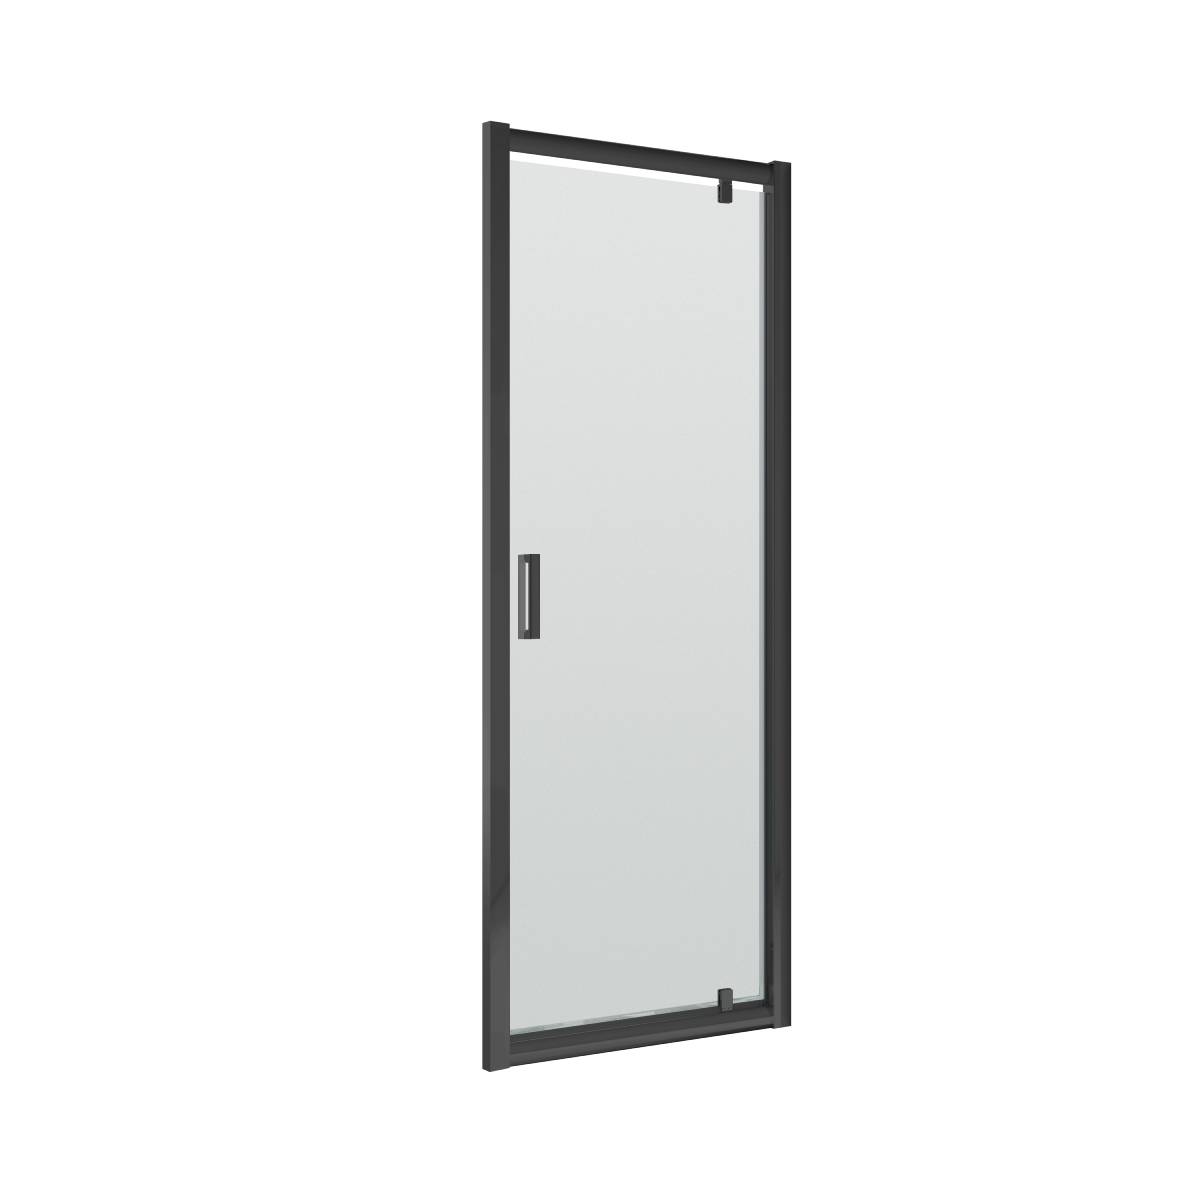 Nuie Pacific 900mm Pivot Shower Door - Black (11545)